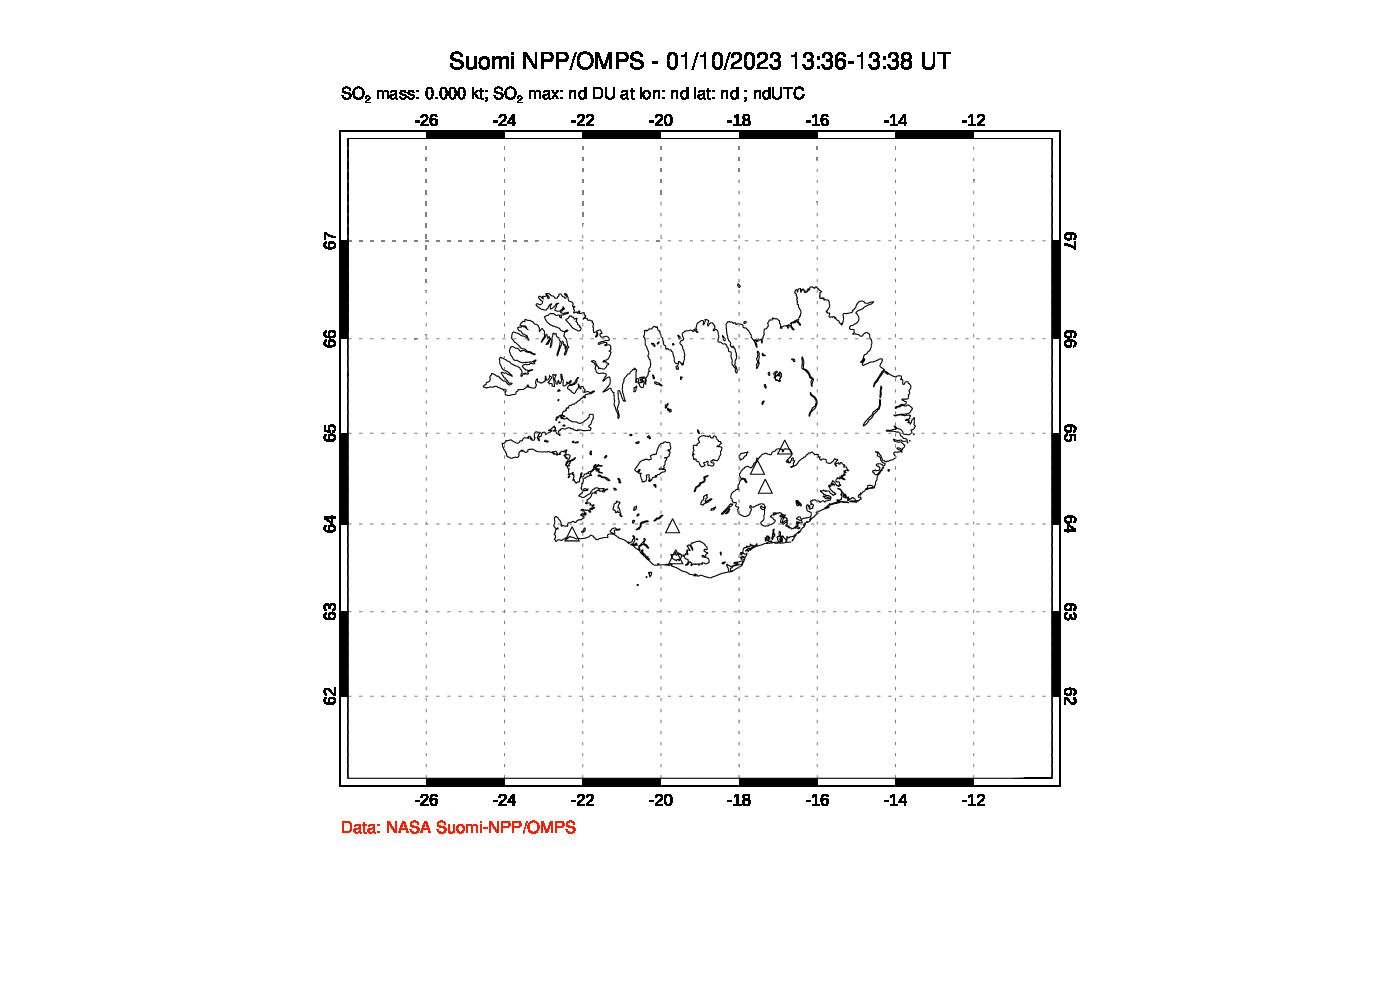 A sulfur dioxide image over Iceland on Jan 10, 2023.